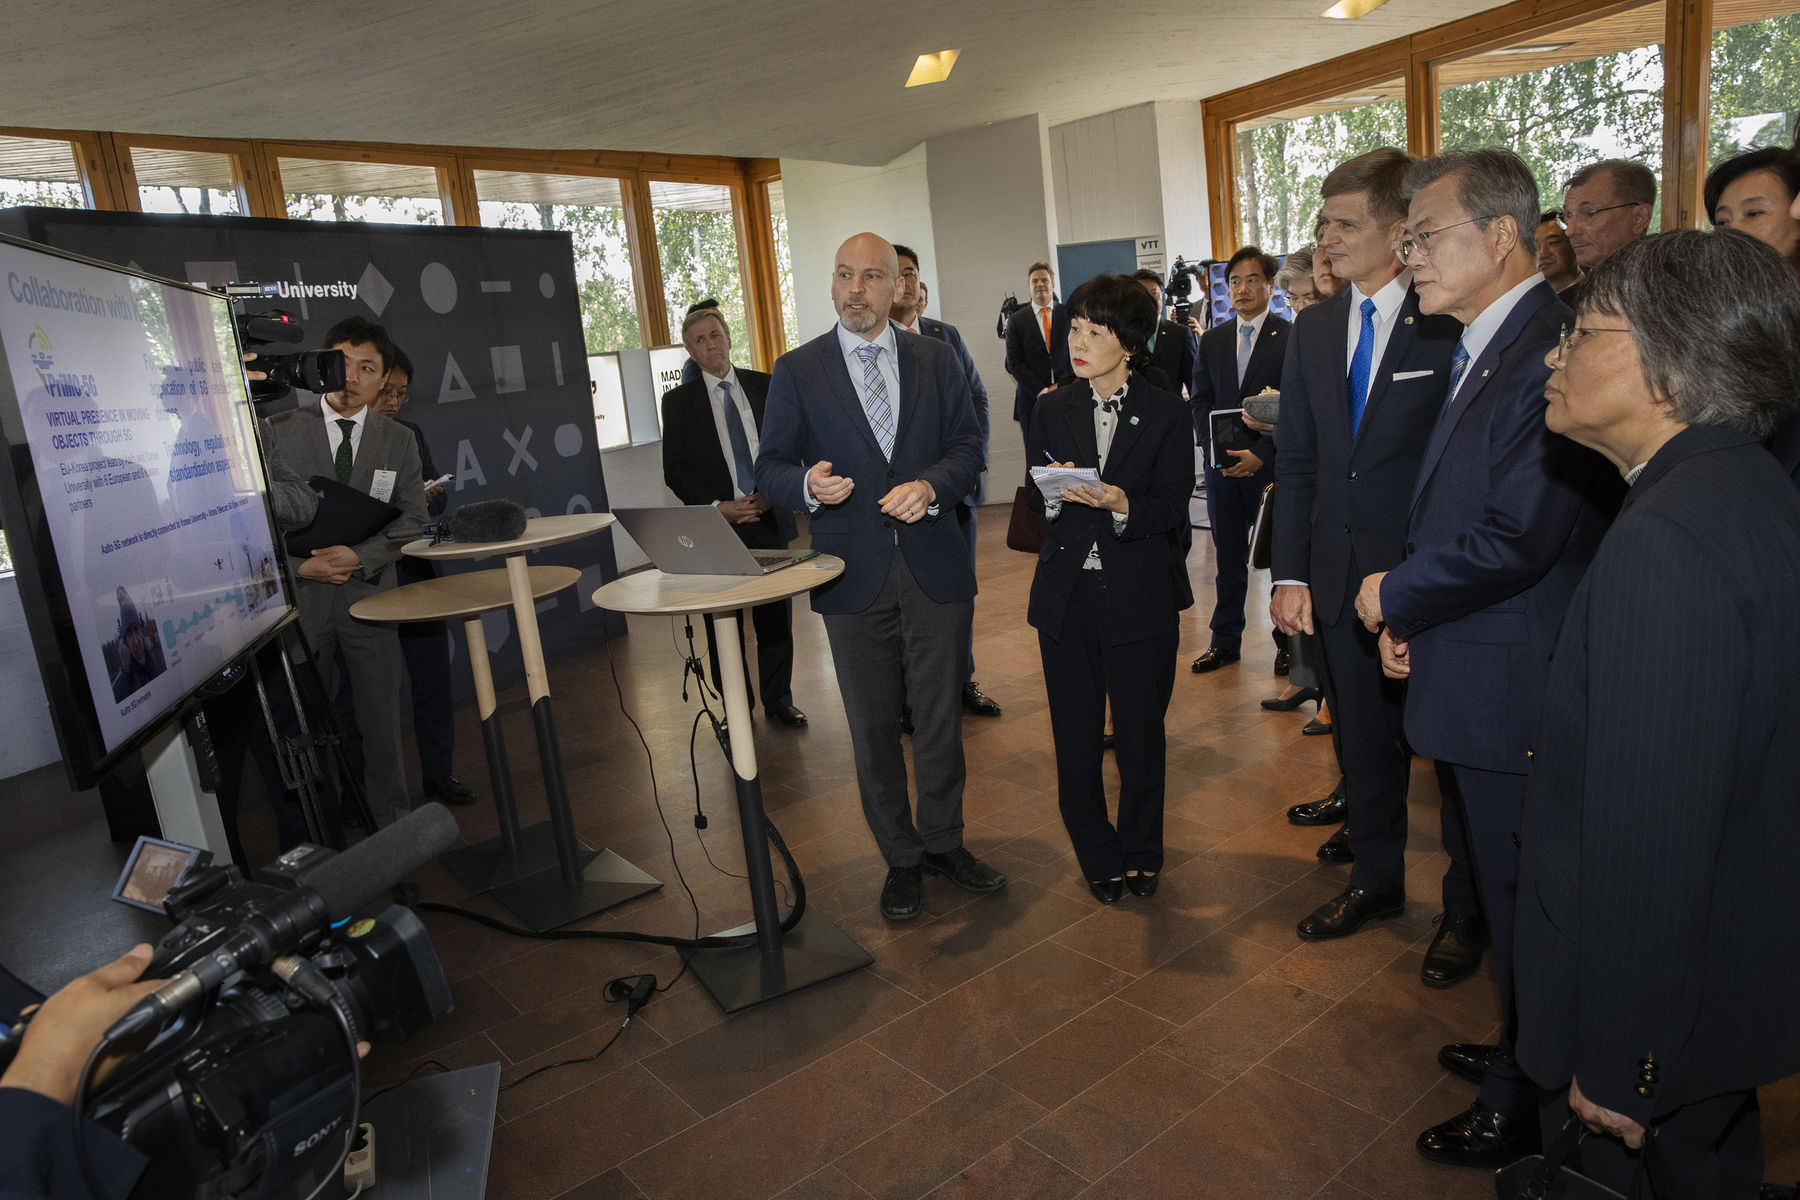 Professori Riku Jäntti (keskellä) kertoo Etelä-Korean presidentille (toinen oikealta) 5G-tutkimuksesta. Kuva: Heli Sorjonen / Aalto-yliopisto